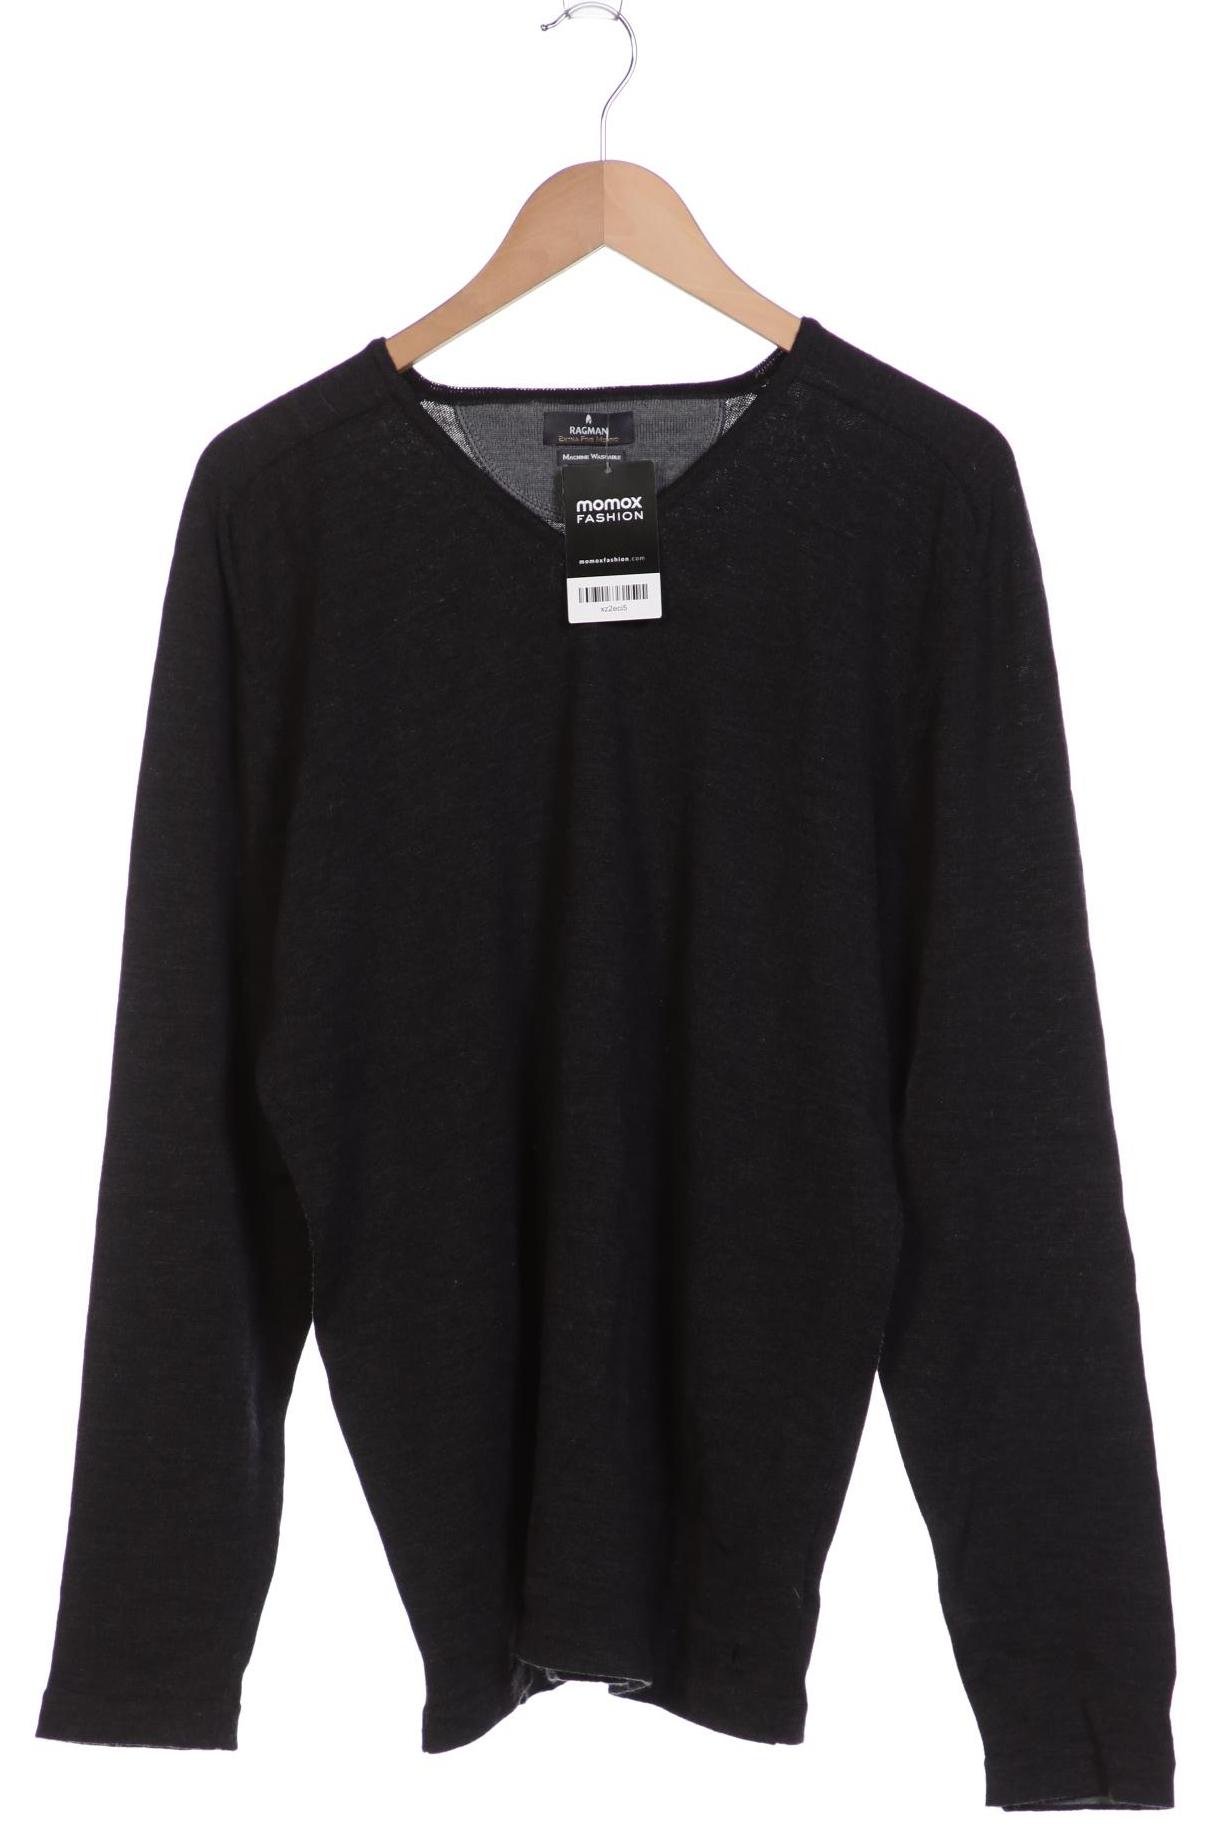 ragman Herren Pullover XXL Second Hand kaufen | momox fashion | T-Shirts